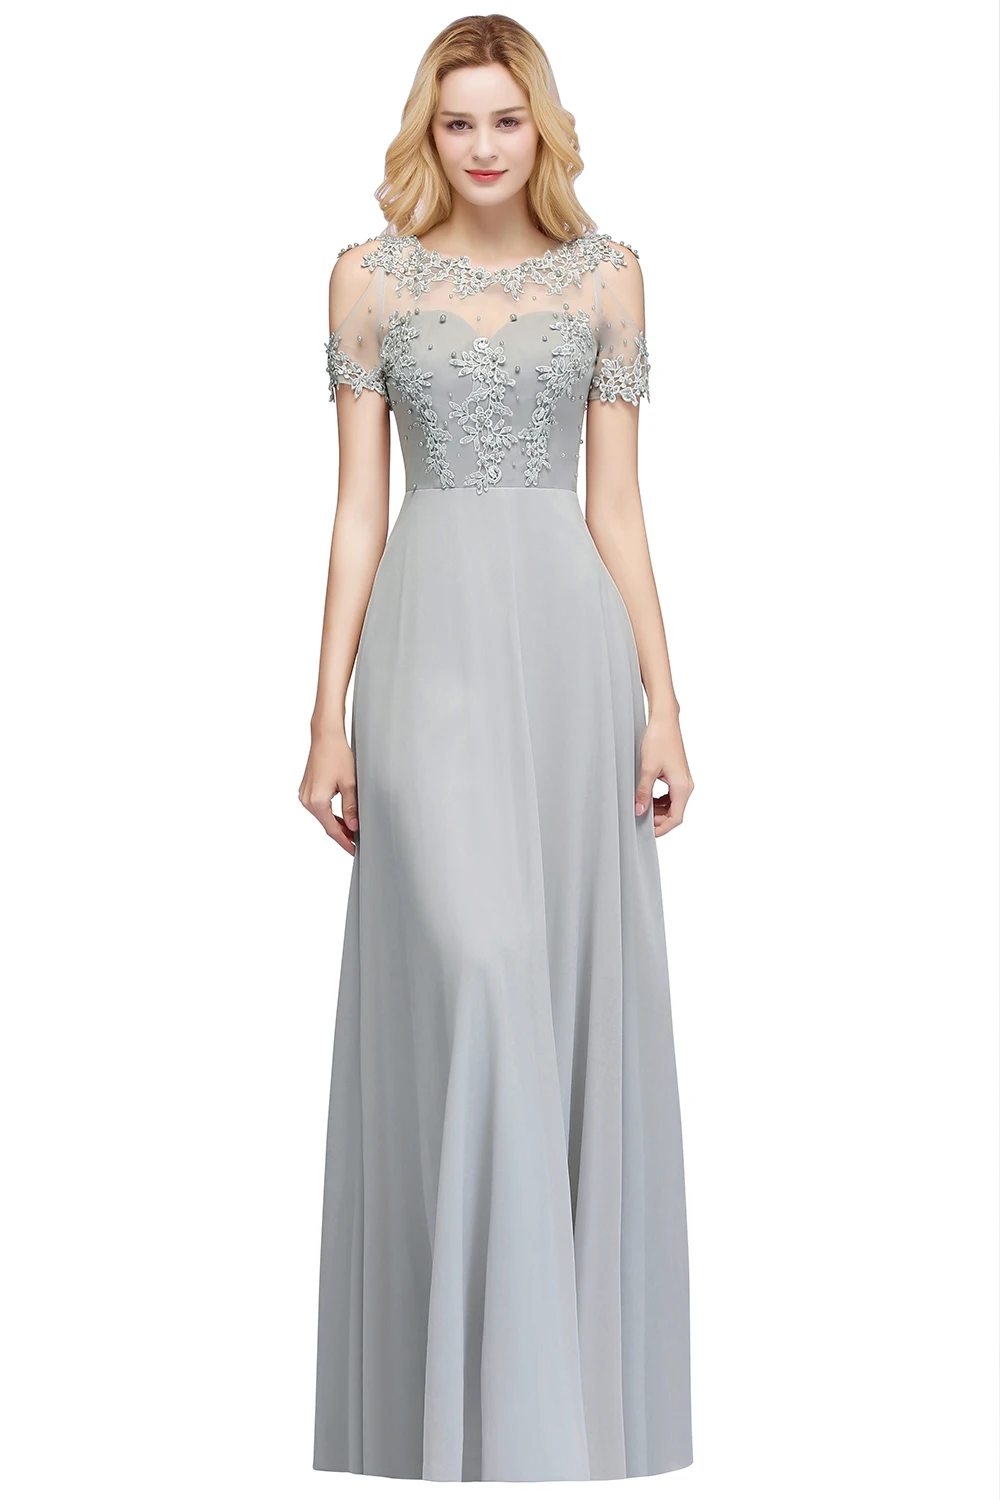 Бордовое темно-синее шифоновое длинное платье подружки невесты с глубоким декольте Аппликация Свадебные вечерние платья для гостей vestido madrinha